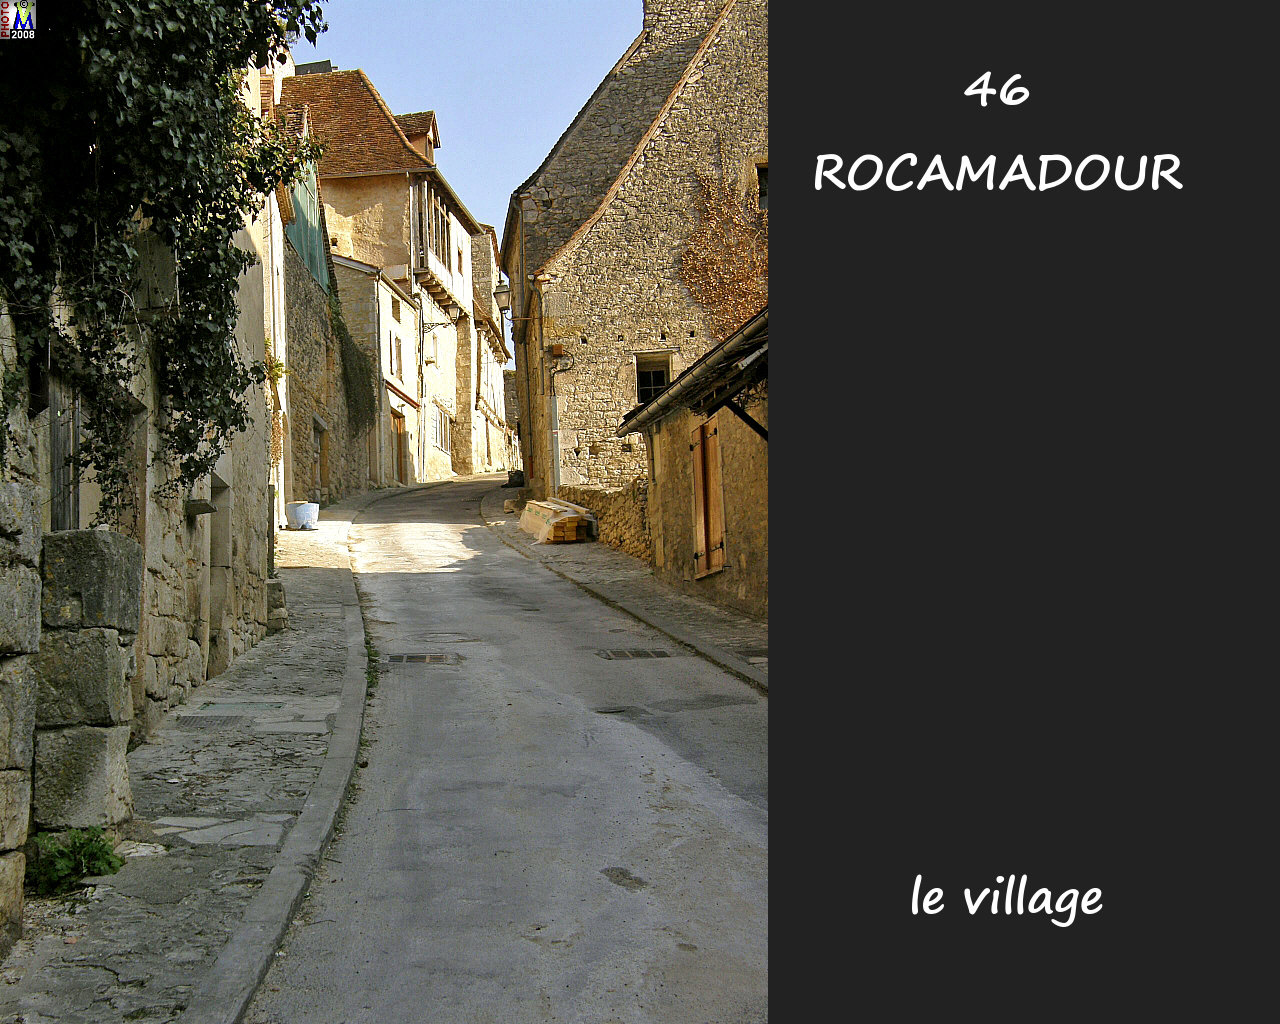 46ROCAMADOUR_village_132.jpg